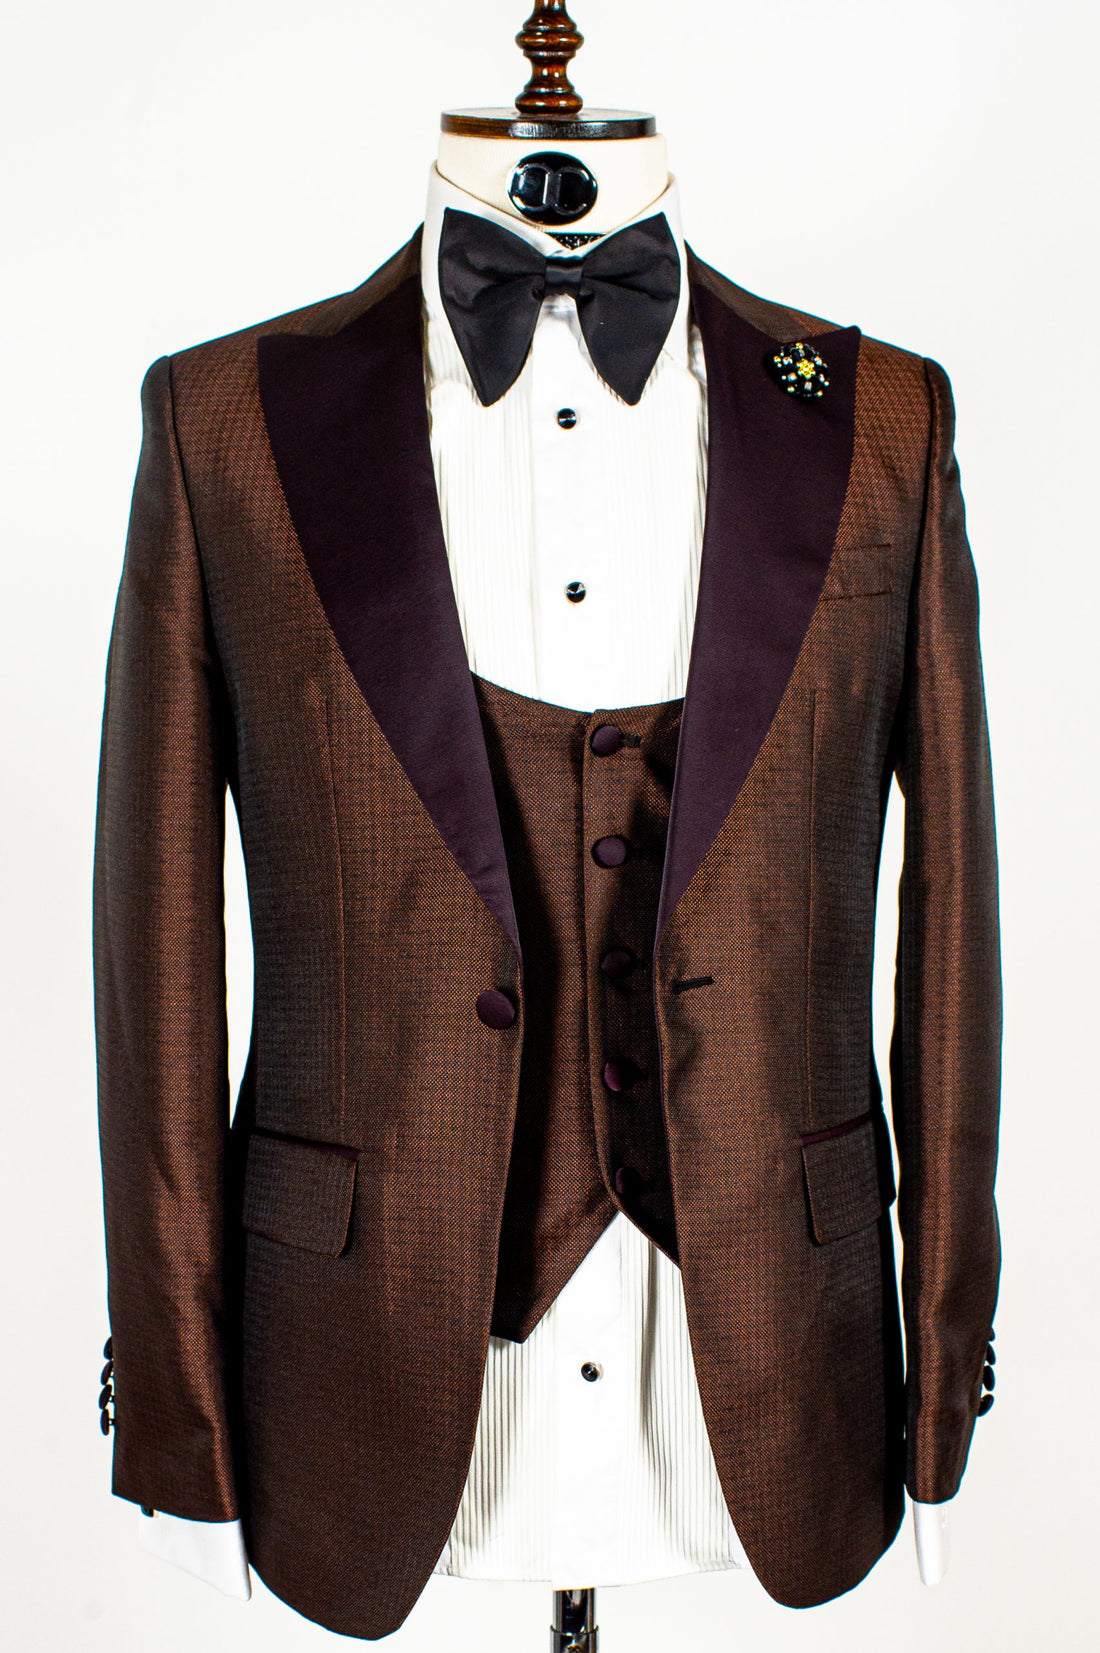 Connaisseur -  Gold pattern 3-piece slim fit tuxedo with U vest